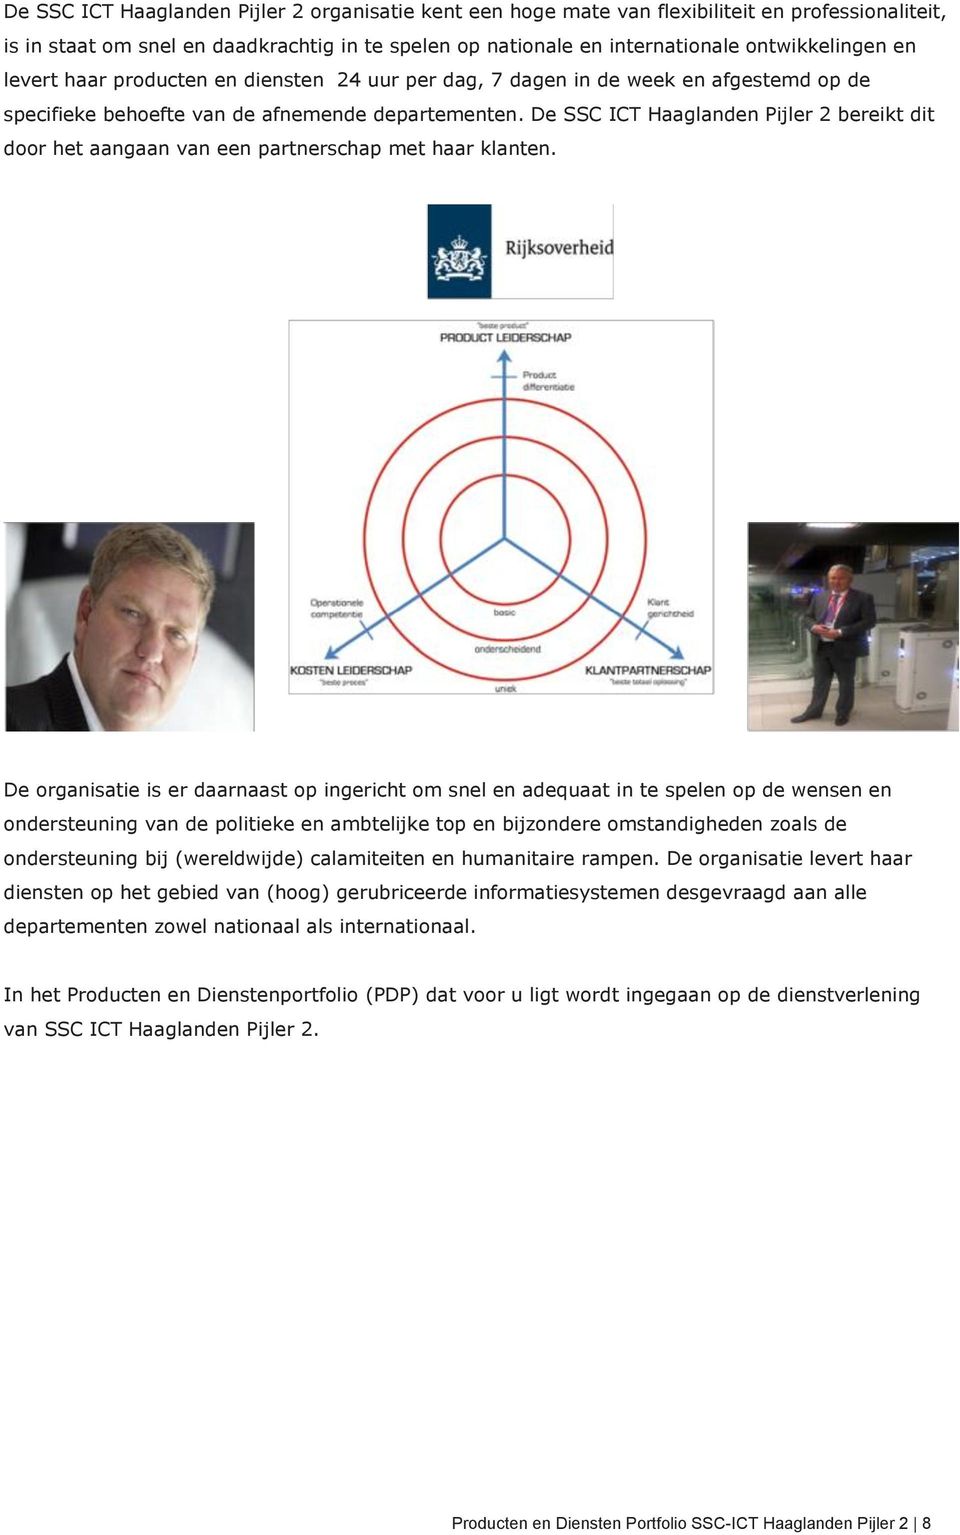 De SSC ICT Haaglanden Pijler 2 bereikt dit door het aangaan van een partnerschap met haar klanten.